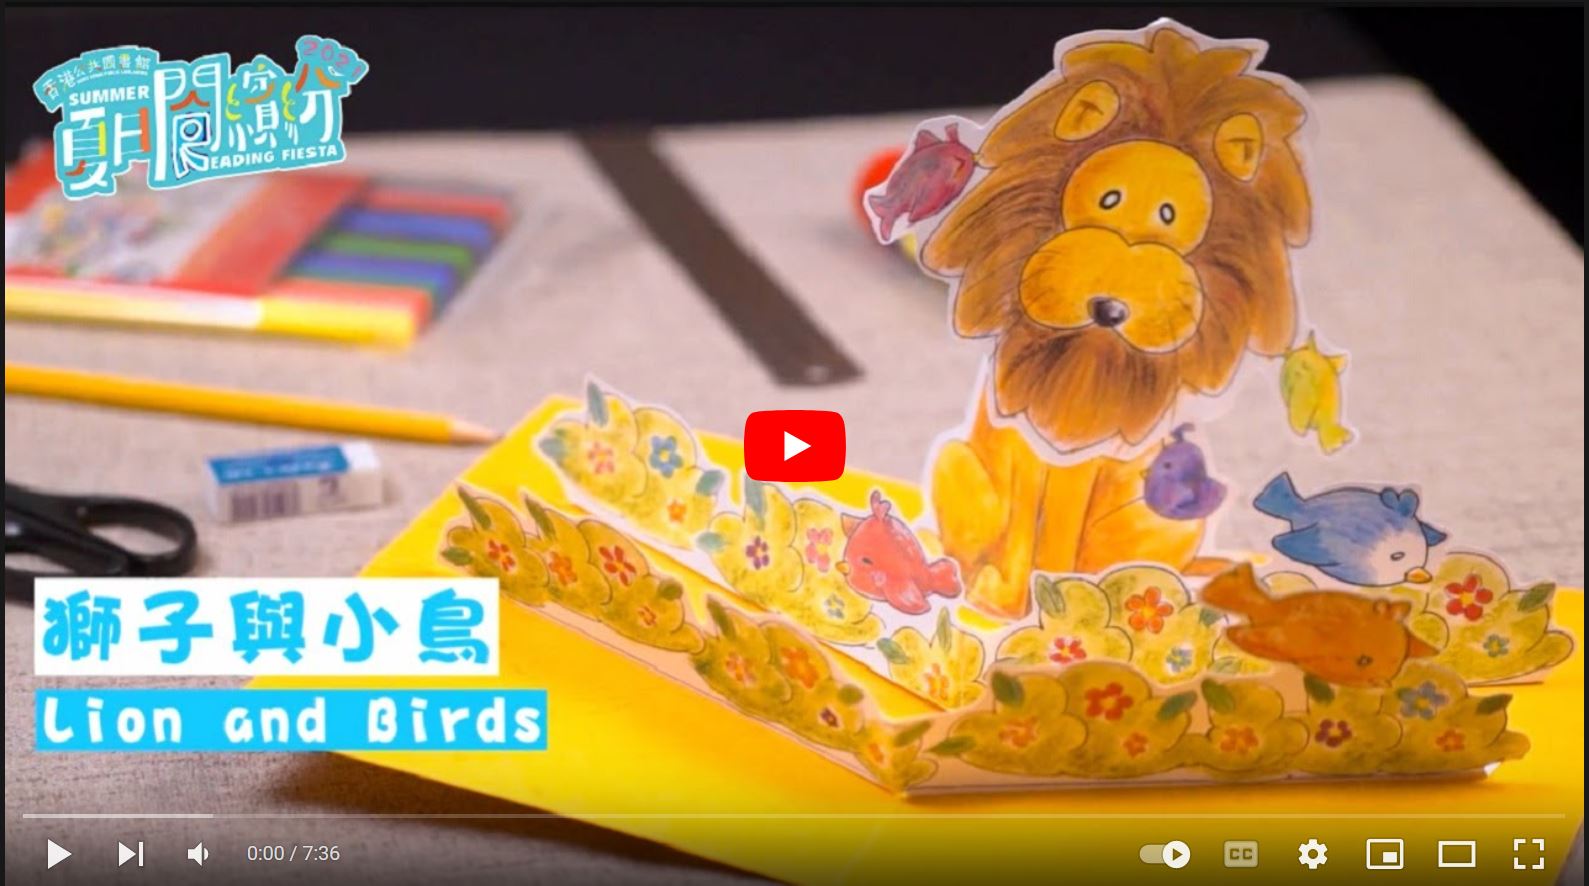 【夏日閱繽紛】立體卡工作坊 (3) 獅子與小鳥